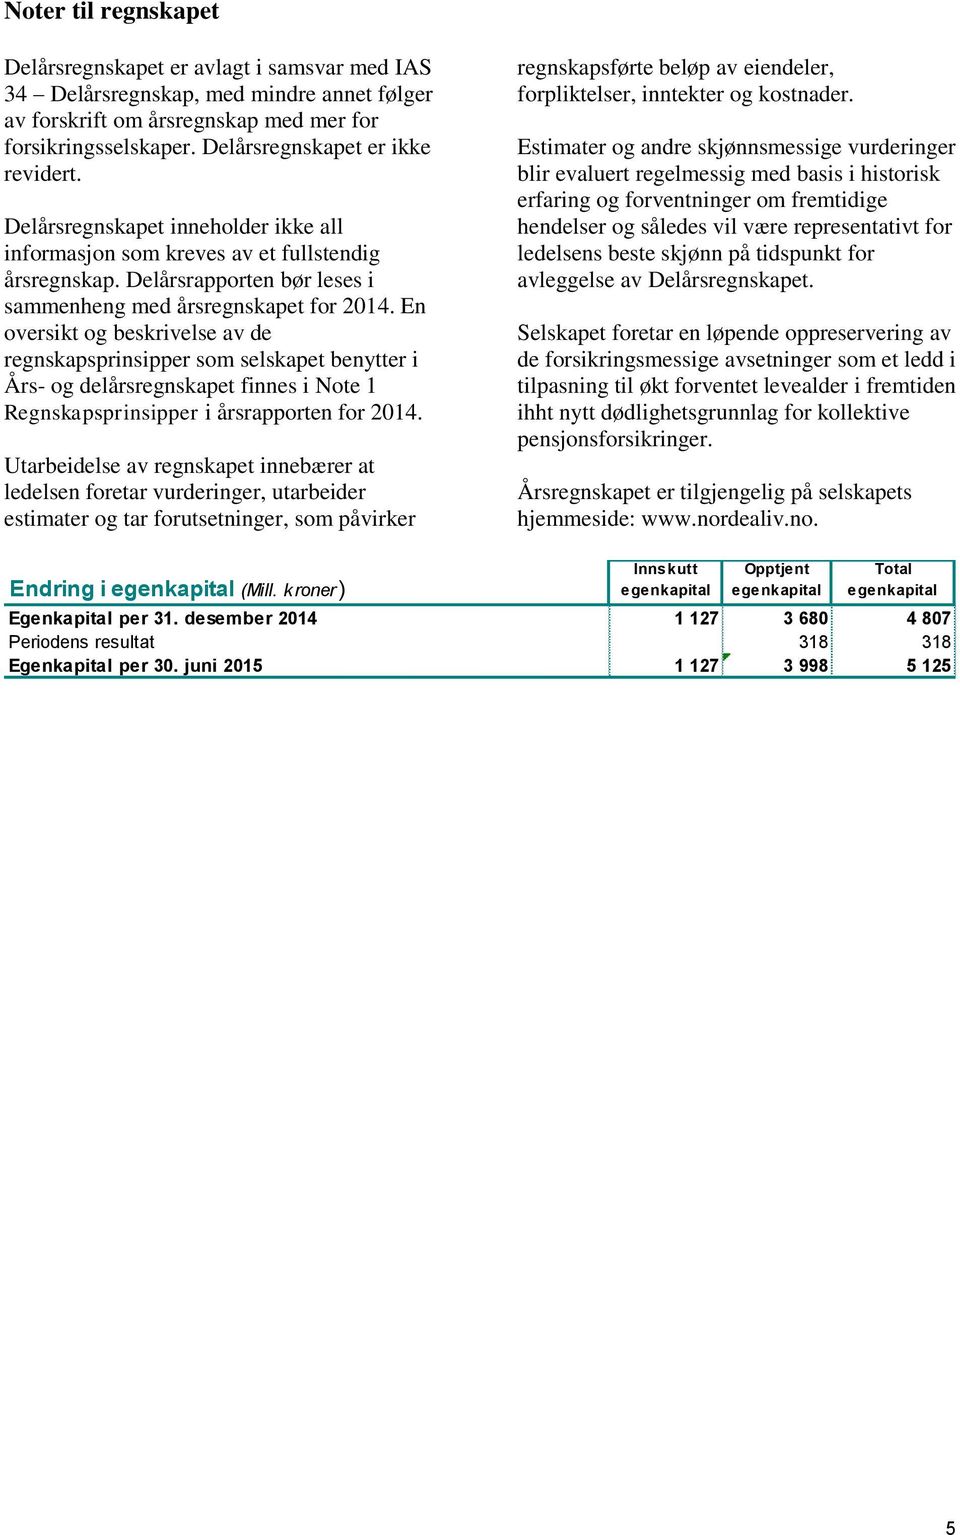 En oversikt og beskrivelse av de regnskapsprinsipper som selskapet benytter i Års- og delårsregnskapet finnes i Note 1 Regnskapsprinsipper i årsrapporten for 2014.